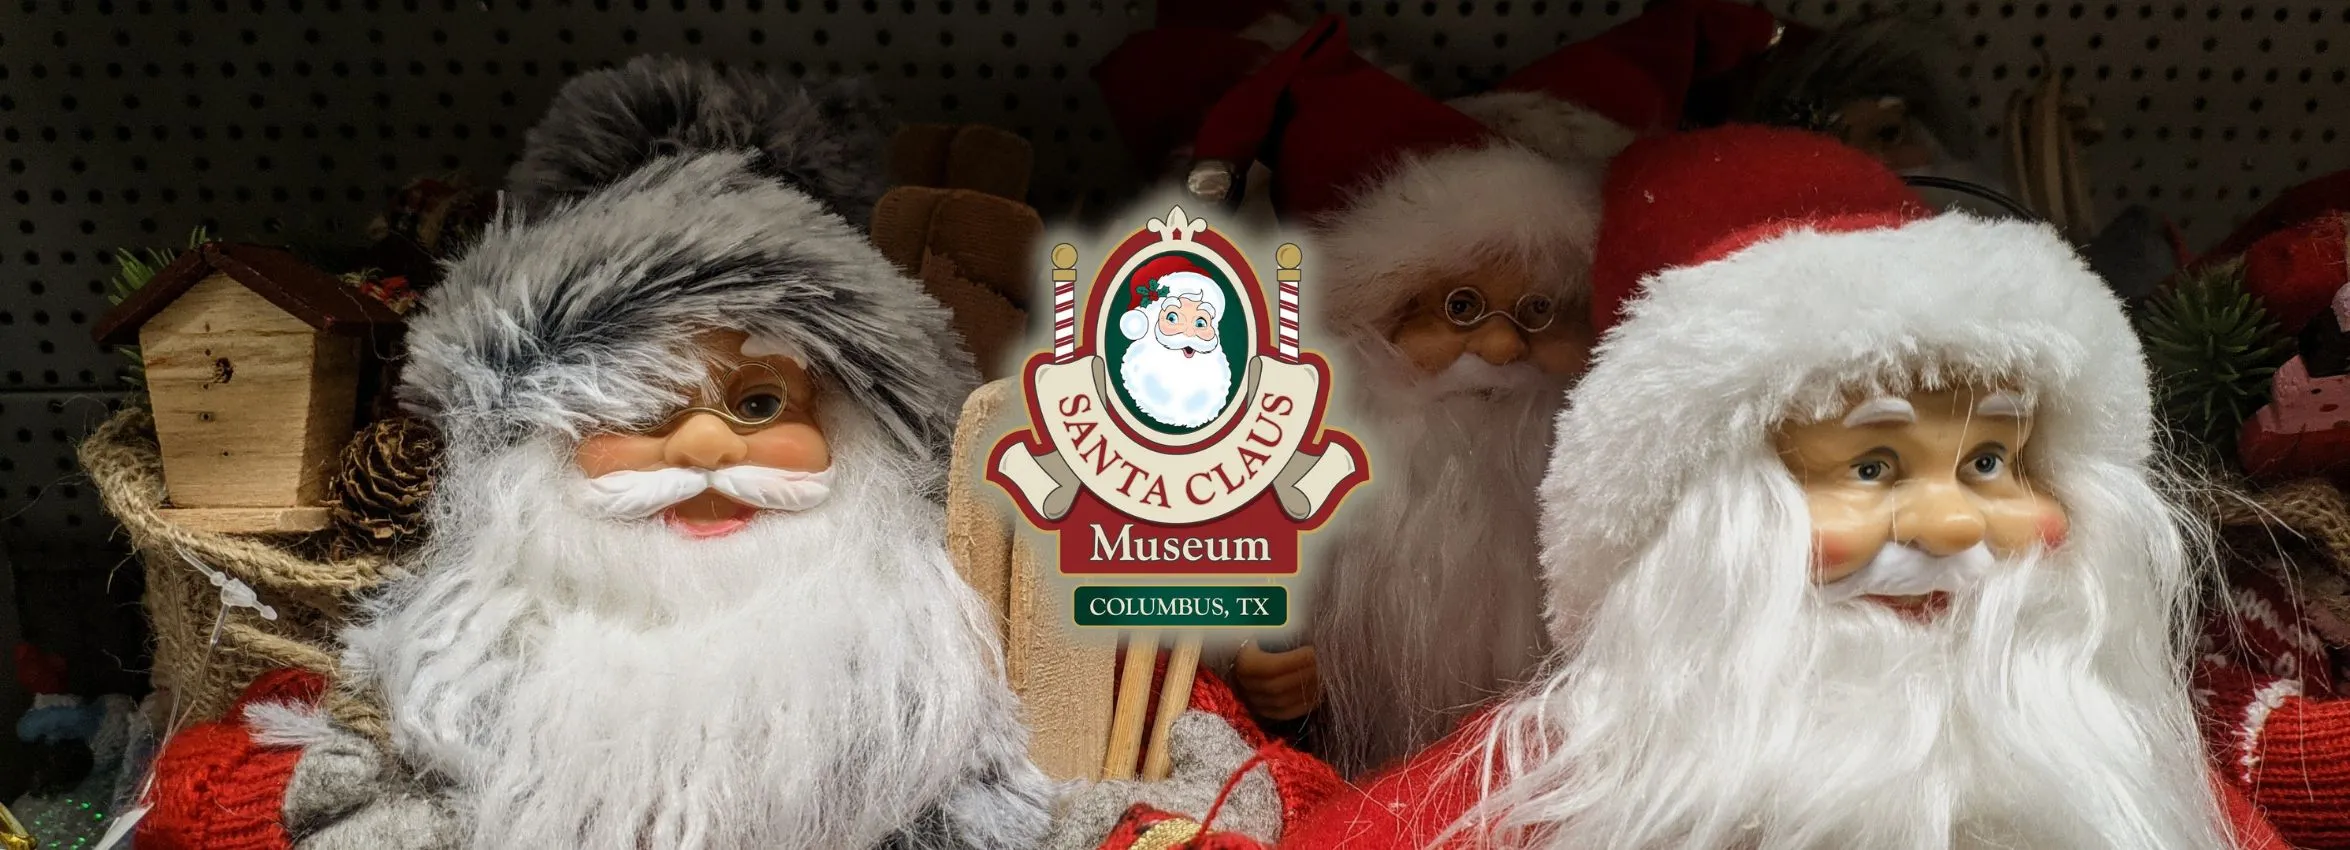 Santa-Clause-Museum_Desktop_ET